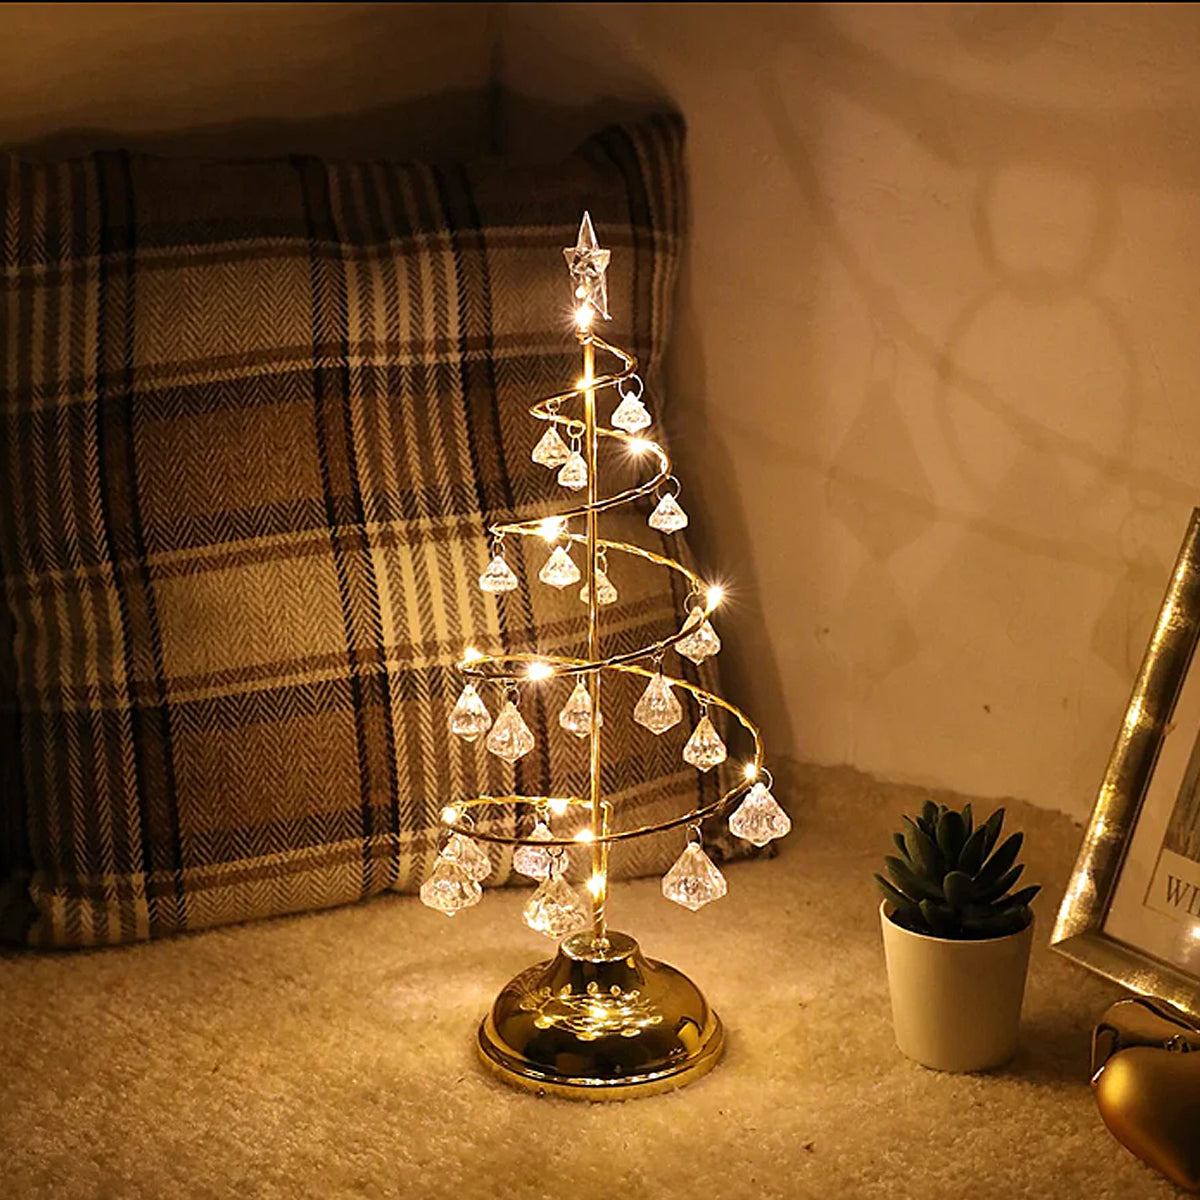 Santo albero di Natale ✦ Albero di Natale Luccicoso ✦ Atmosfera magica